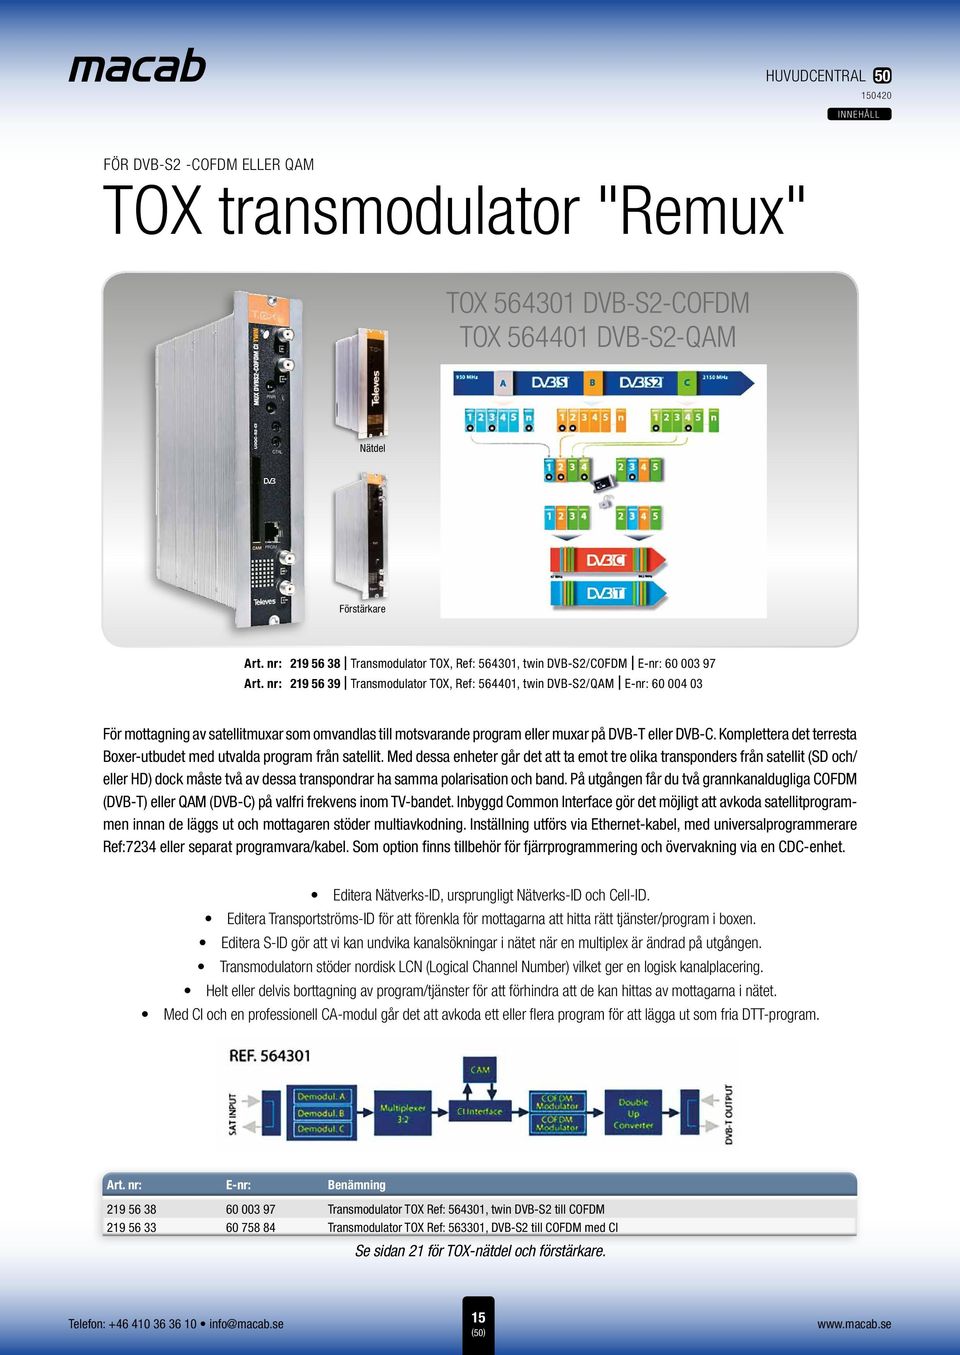 nr: 219 56 39 Transmodulator TOX, Ref: 564401, twin DVB-S2/QAM E-nr: 60 004 03 För mottagning av satellitmuxar som omvandlas till motsvarande program eller muxar på DVB-T eller DVB-C.